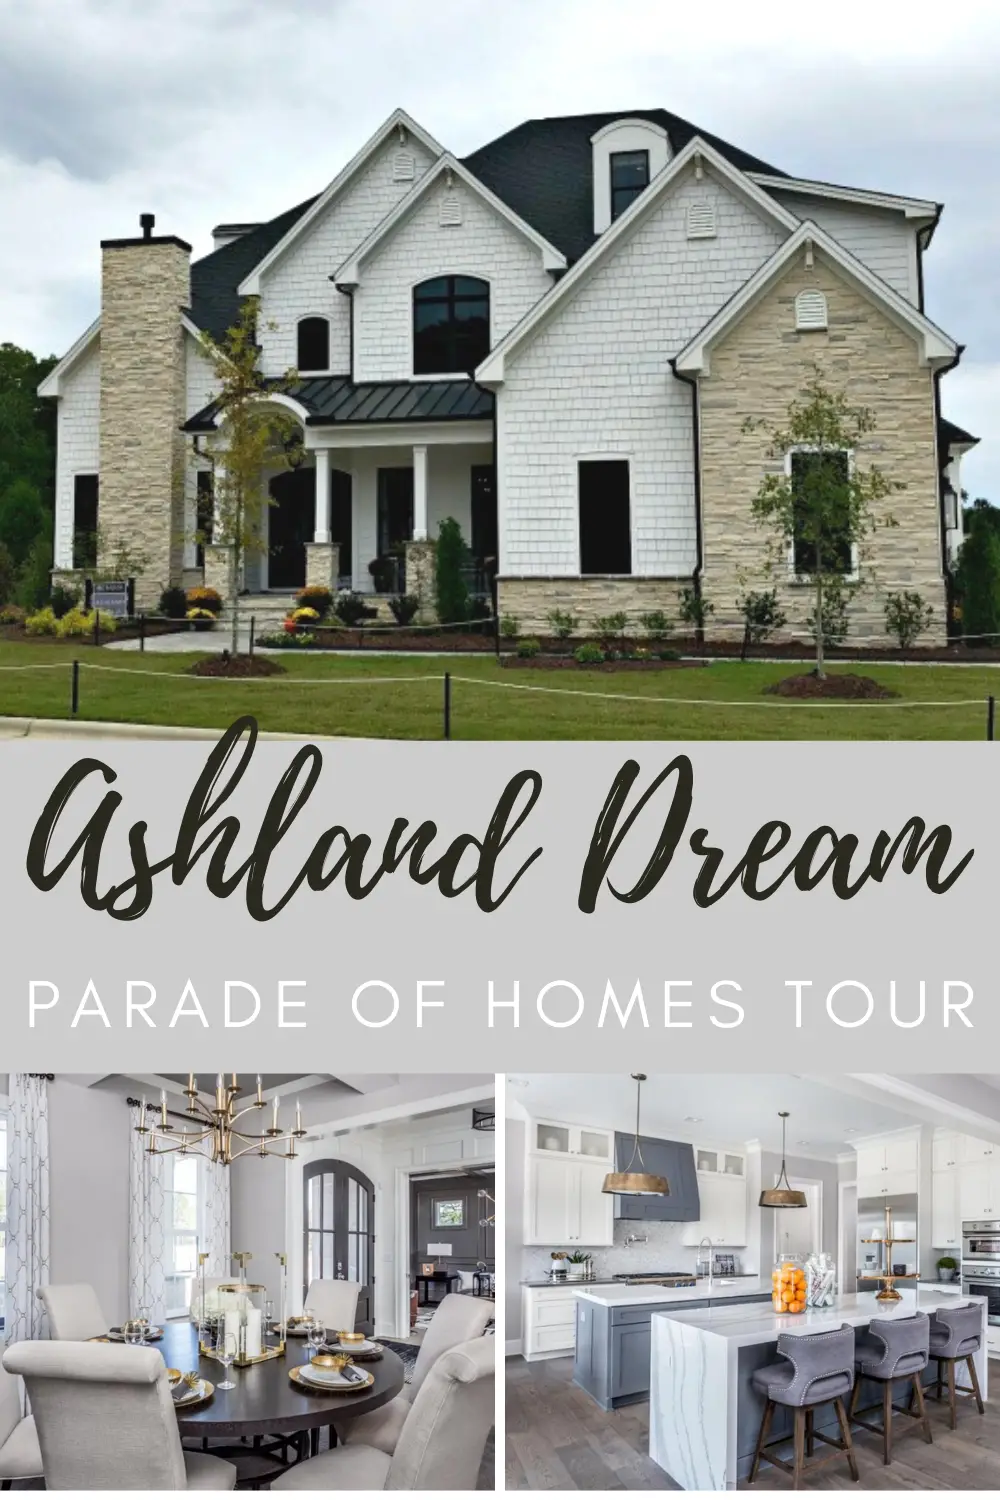 Ashland Dream Parade of Homes Tour